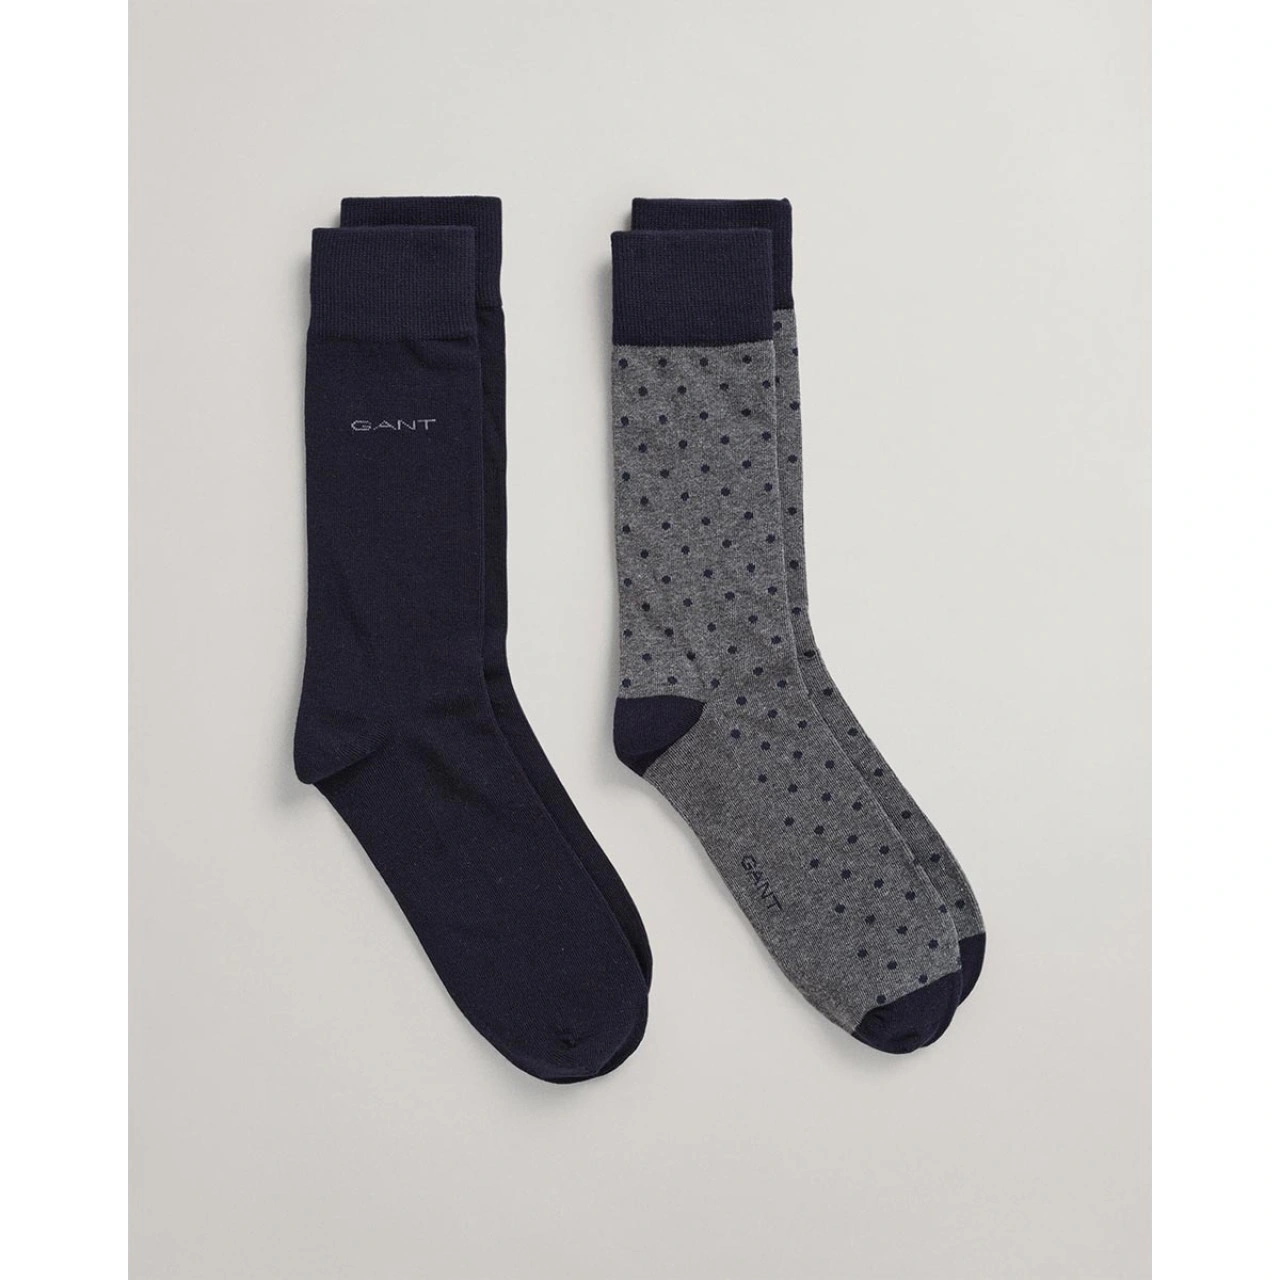 Σετ ανδρικές κάλτσες 2 τμχ. 2-Pack Solid And Dot Socks - GANT - Antoniadis  Stores